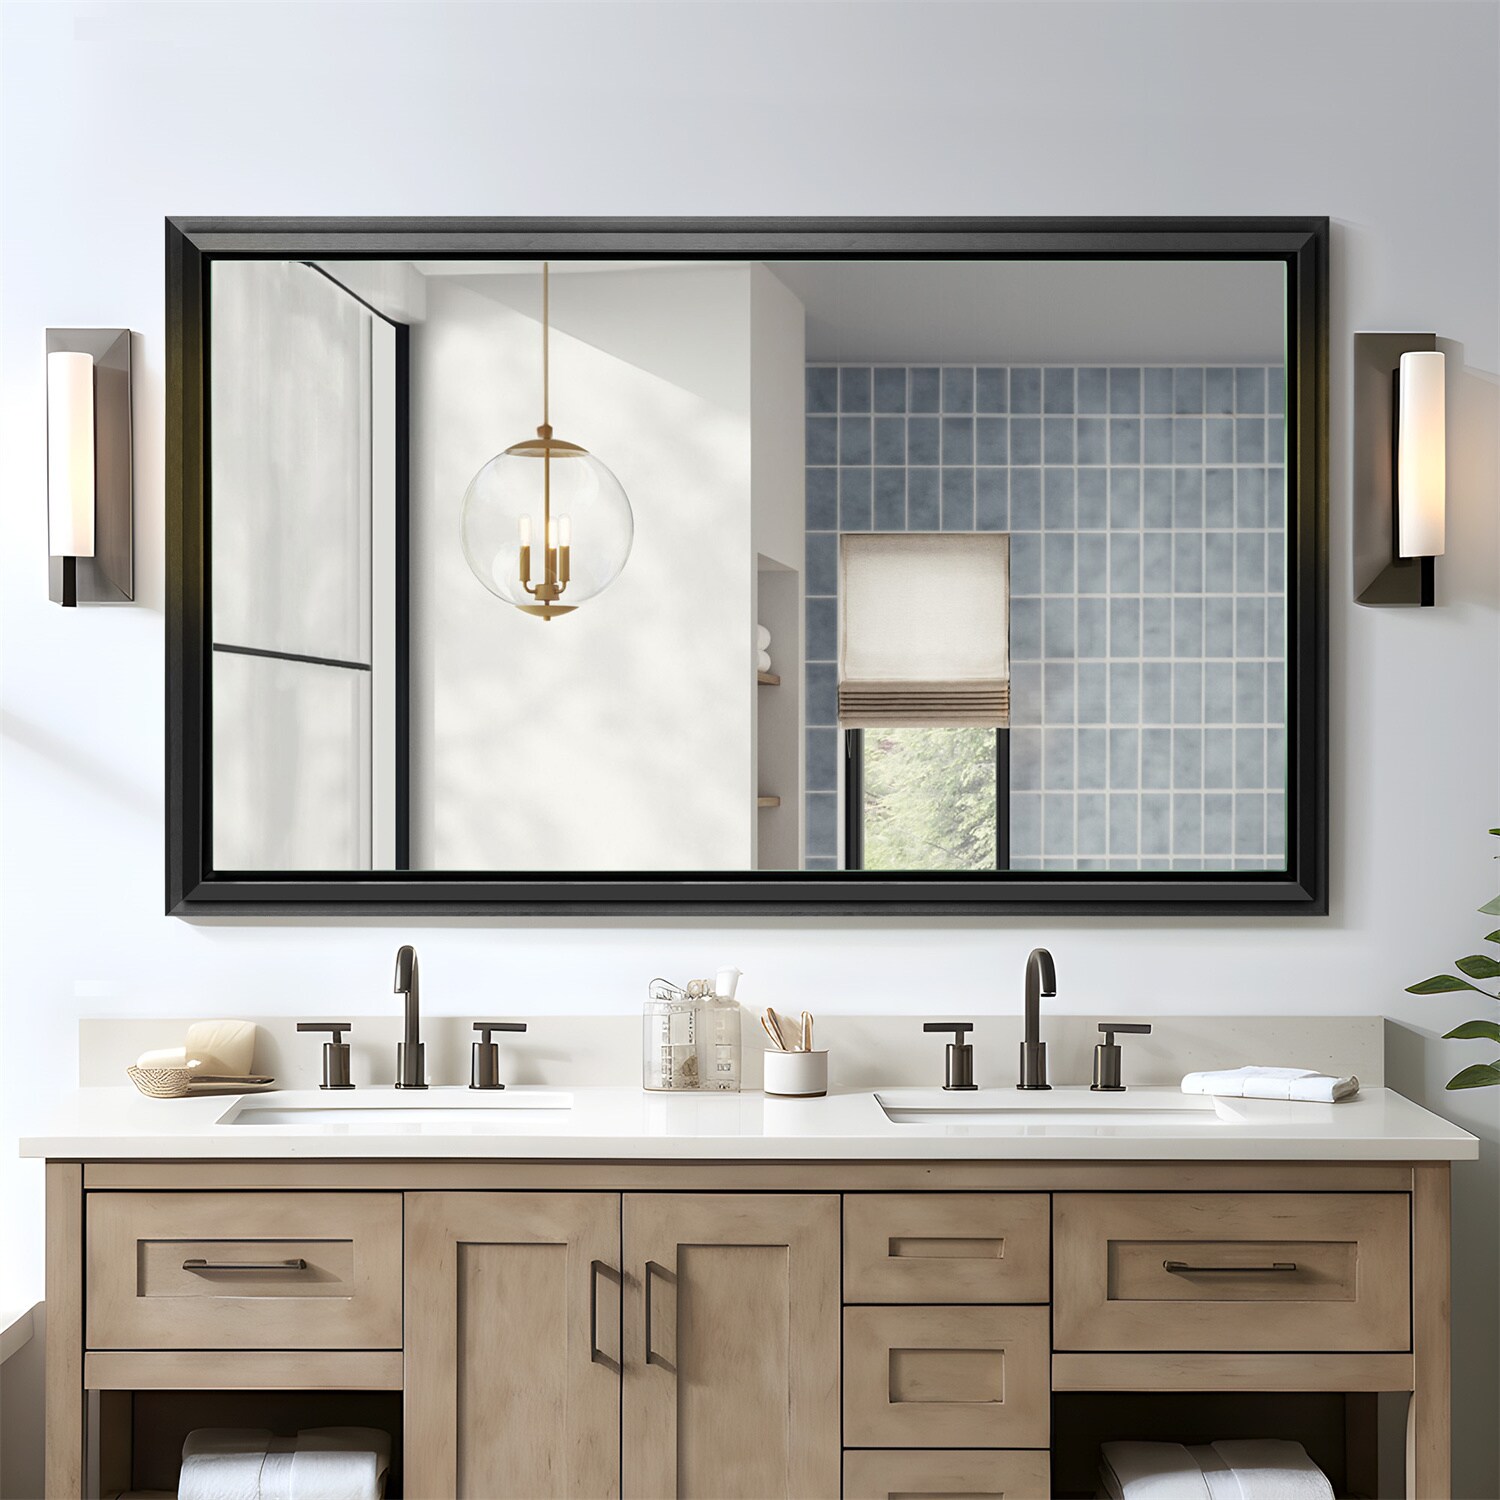 NeuType 36-in x 60-in Black Framed Bathroom Vanity Mirror at Lowes.com